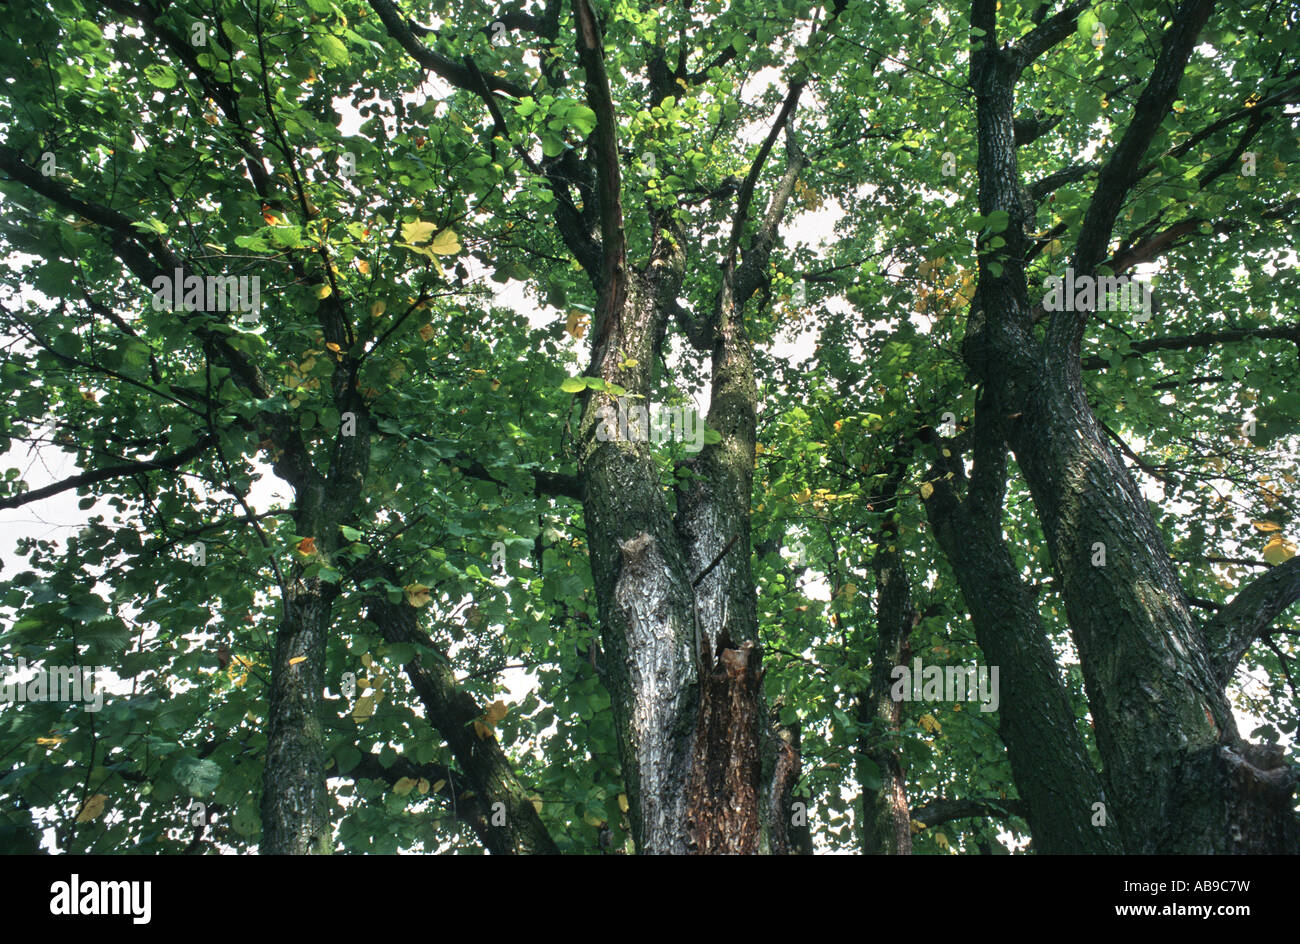 European elm, European white elm (Ulmus laevis), view into the crown Stock Photo